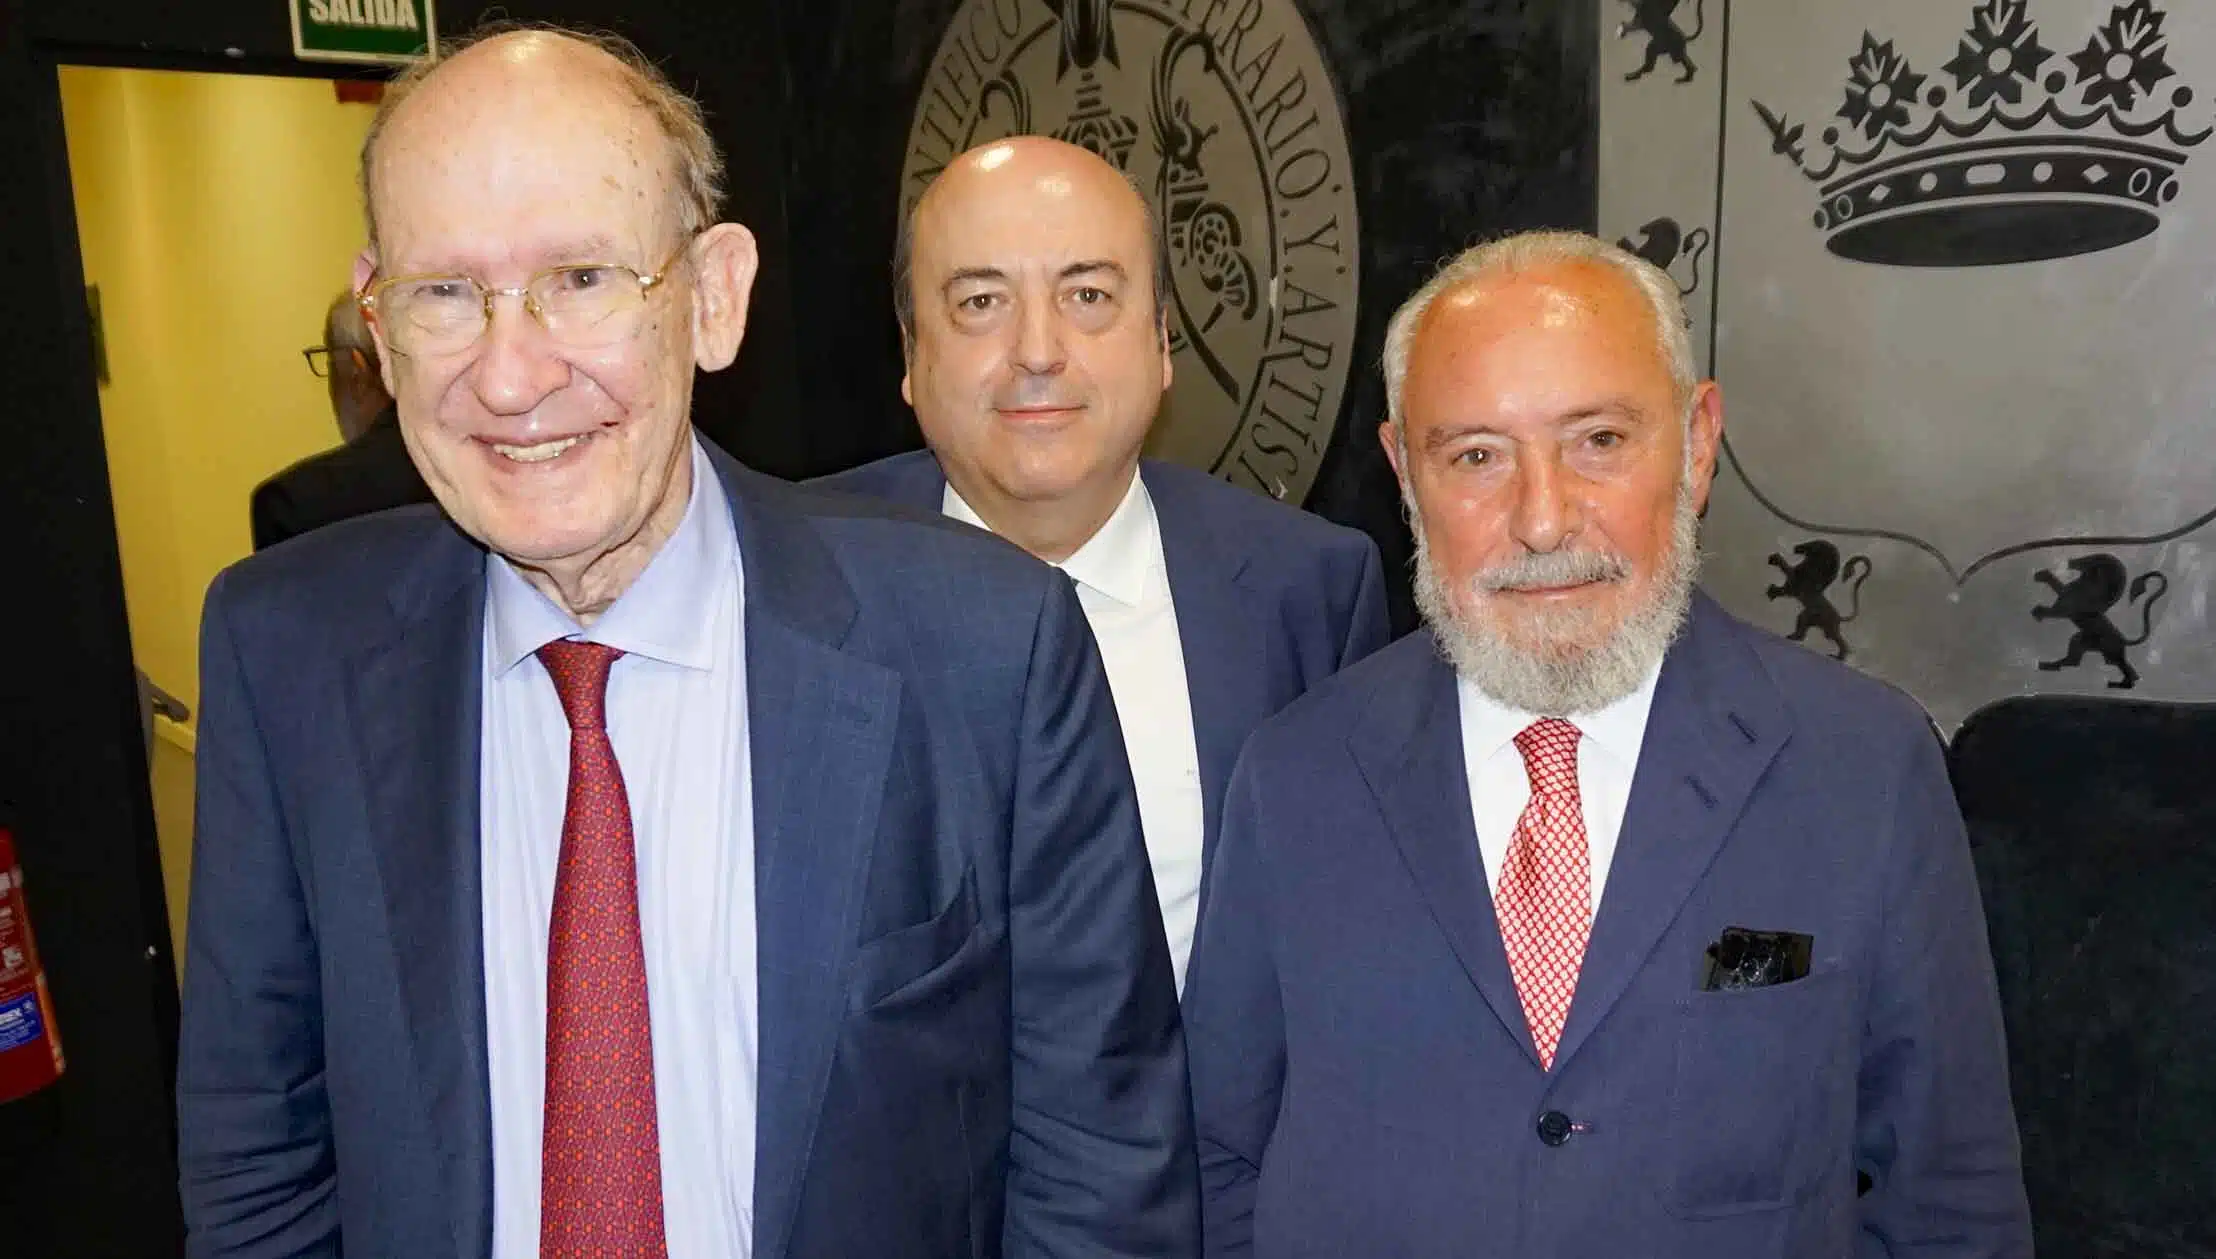 Manuel Aragón y Enrique Gimbernat: “La ley de amnistía que parecer estar gestándose sería inconstitucional”